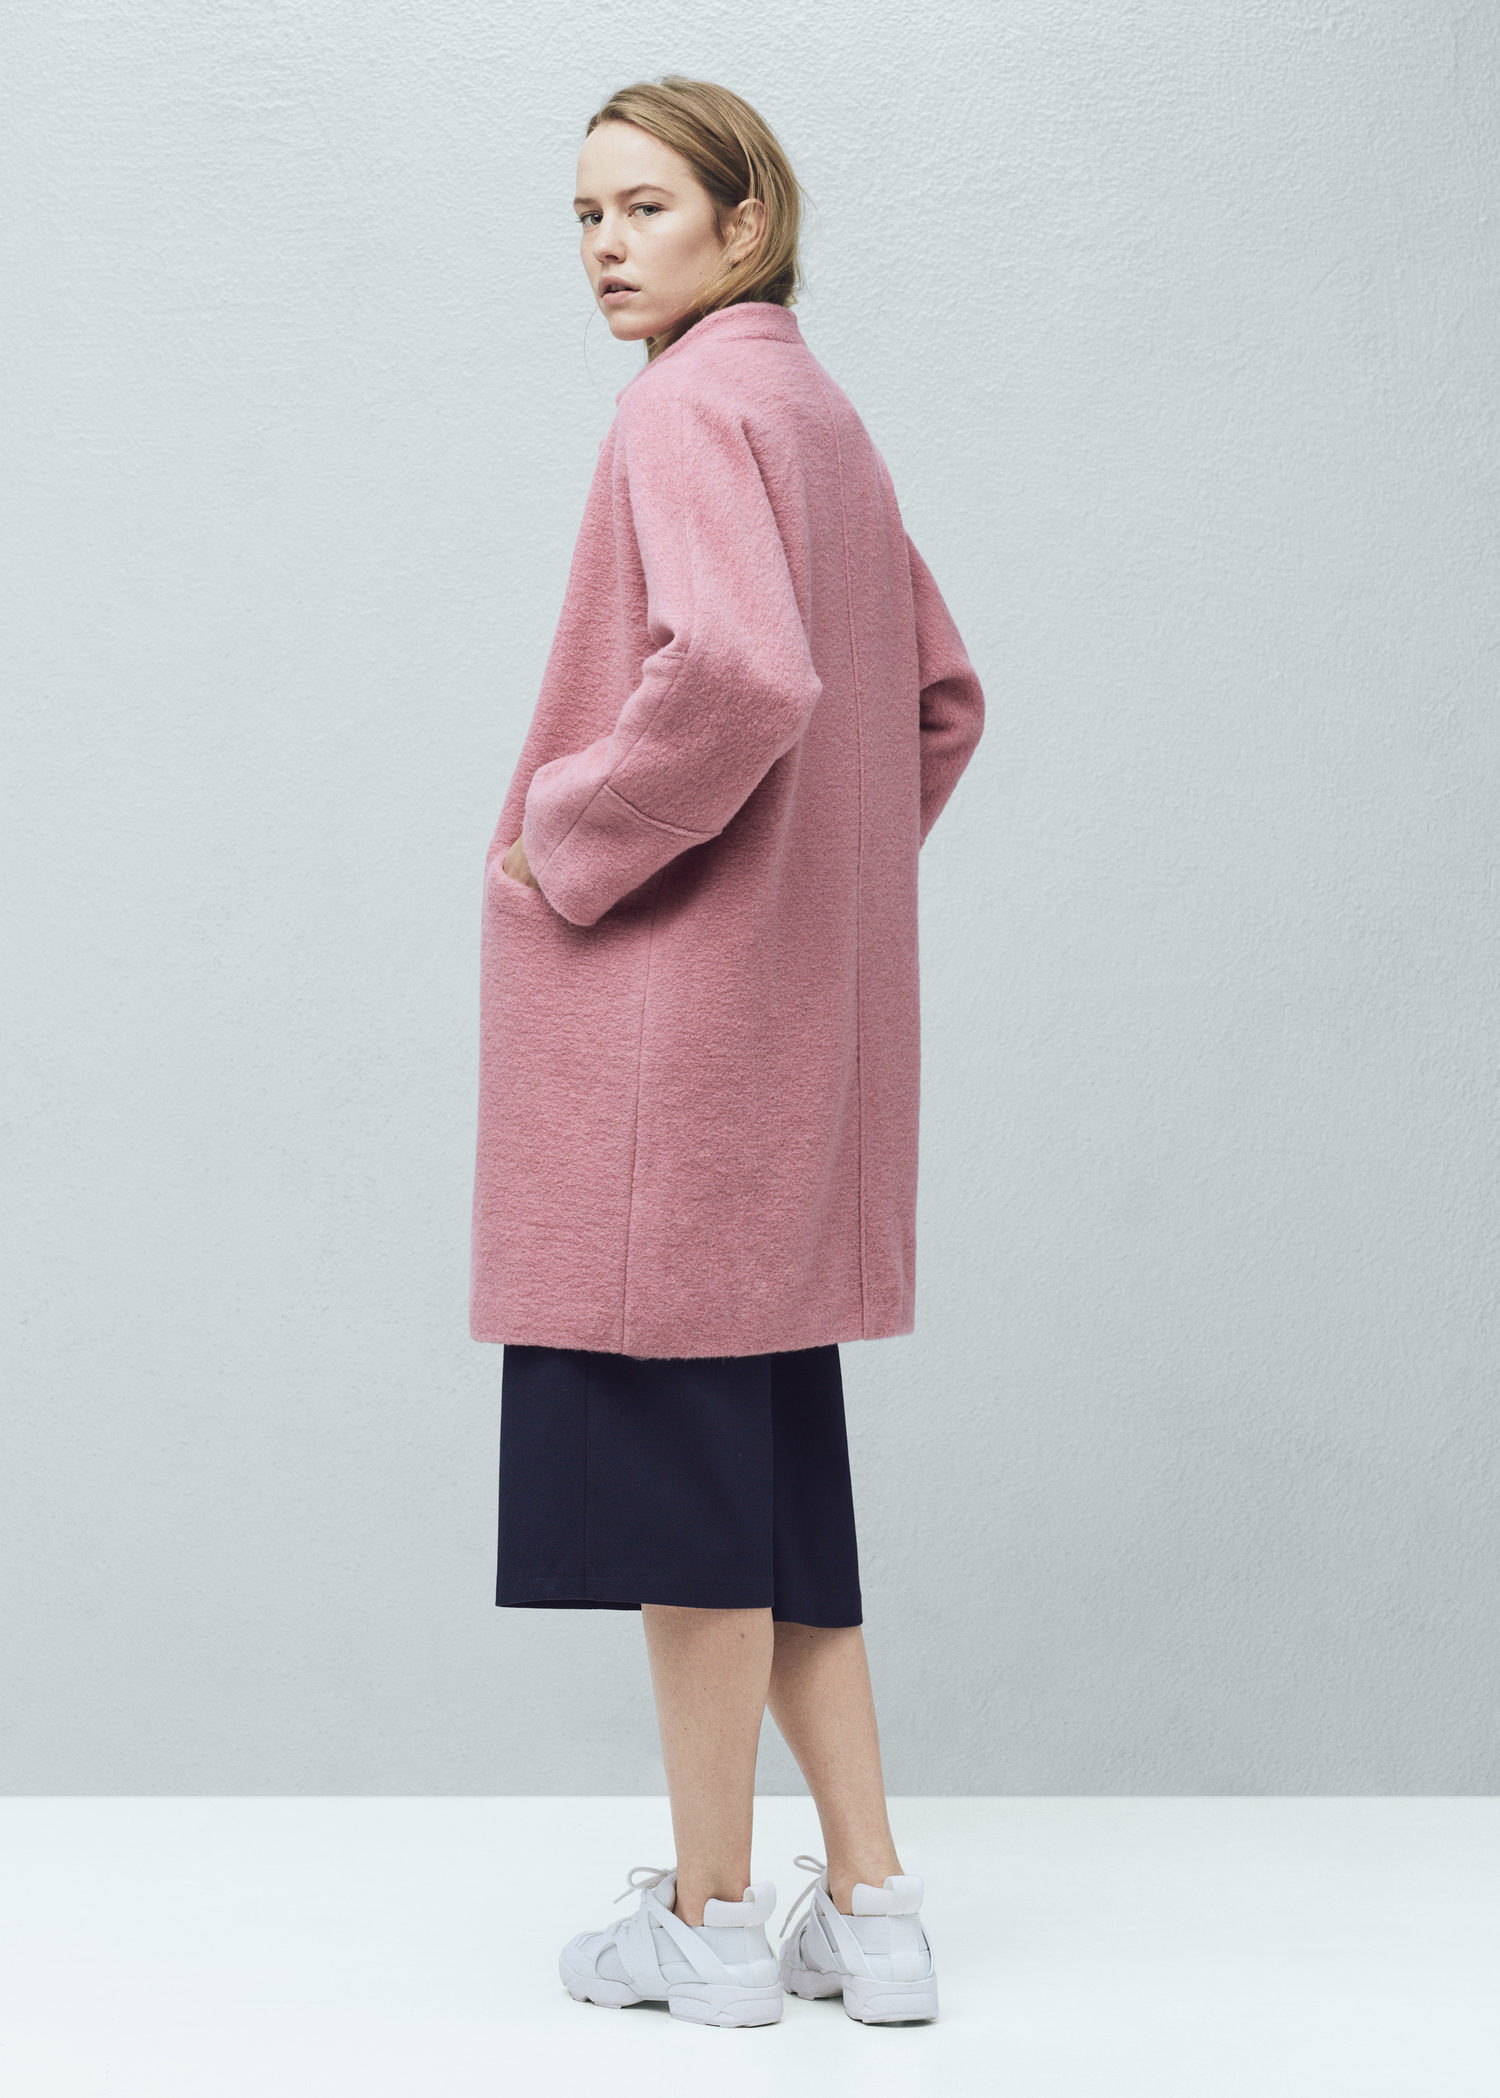 Mango Pink Coat | Fashion Women's Coat 2017